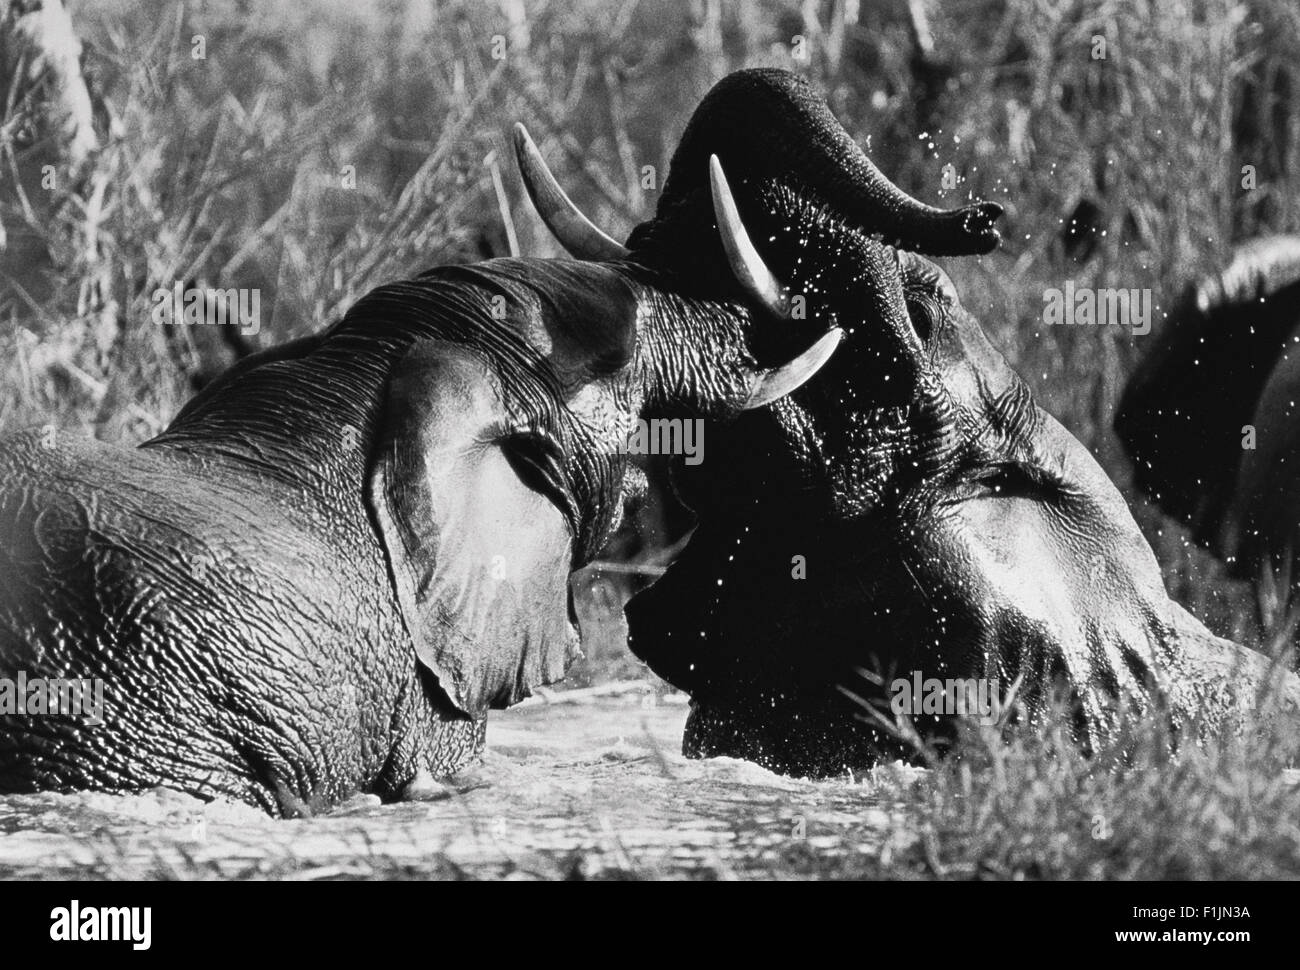 Los elefantes luchan en el río. Foto de stock